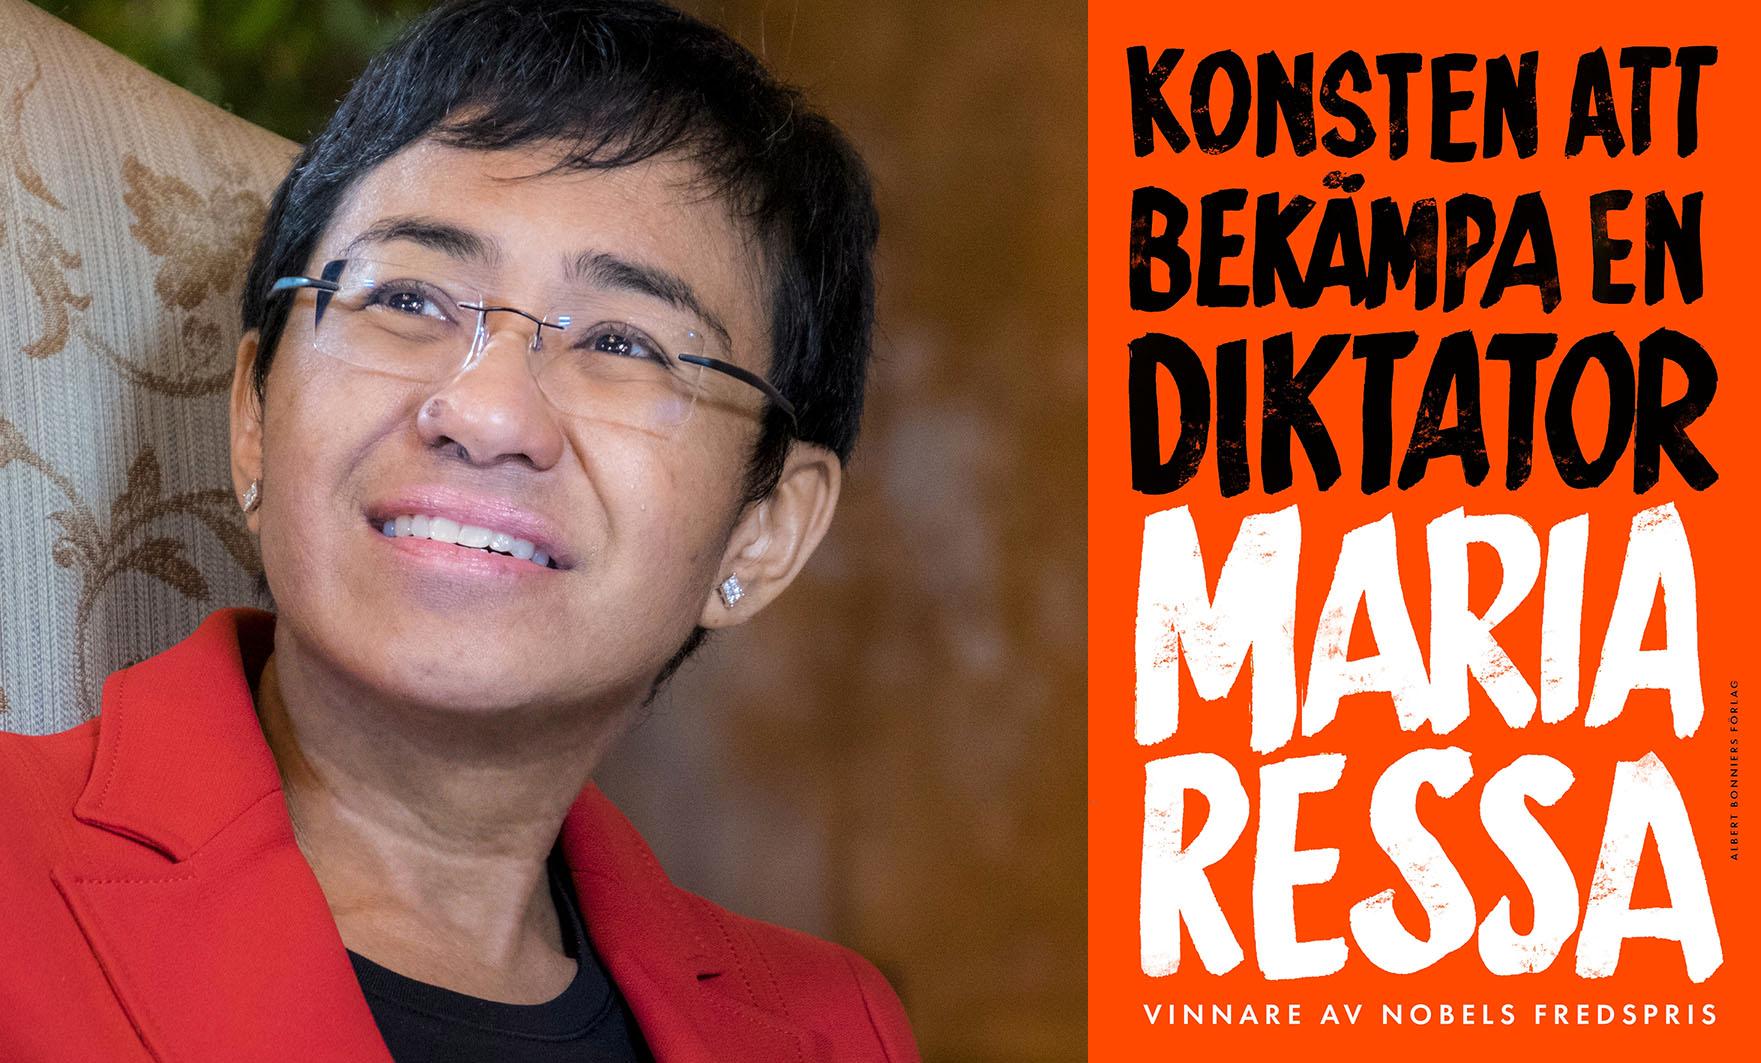 Maria Ressa är en grävande journalist från Filippinerna. Hon tilldelades Nobels fredspris 2021 och nu utkommer hennes ”Konsten att bekämpa en diktator” på svenska.